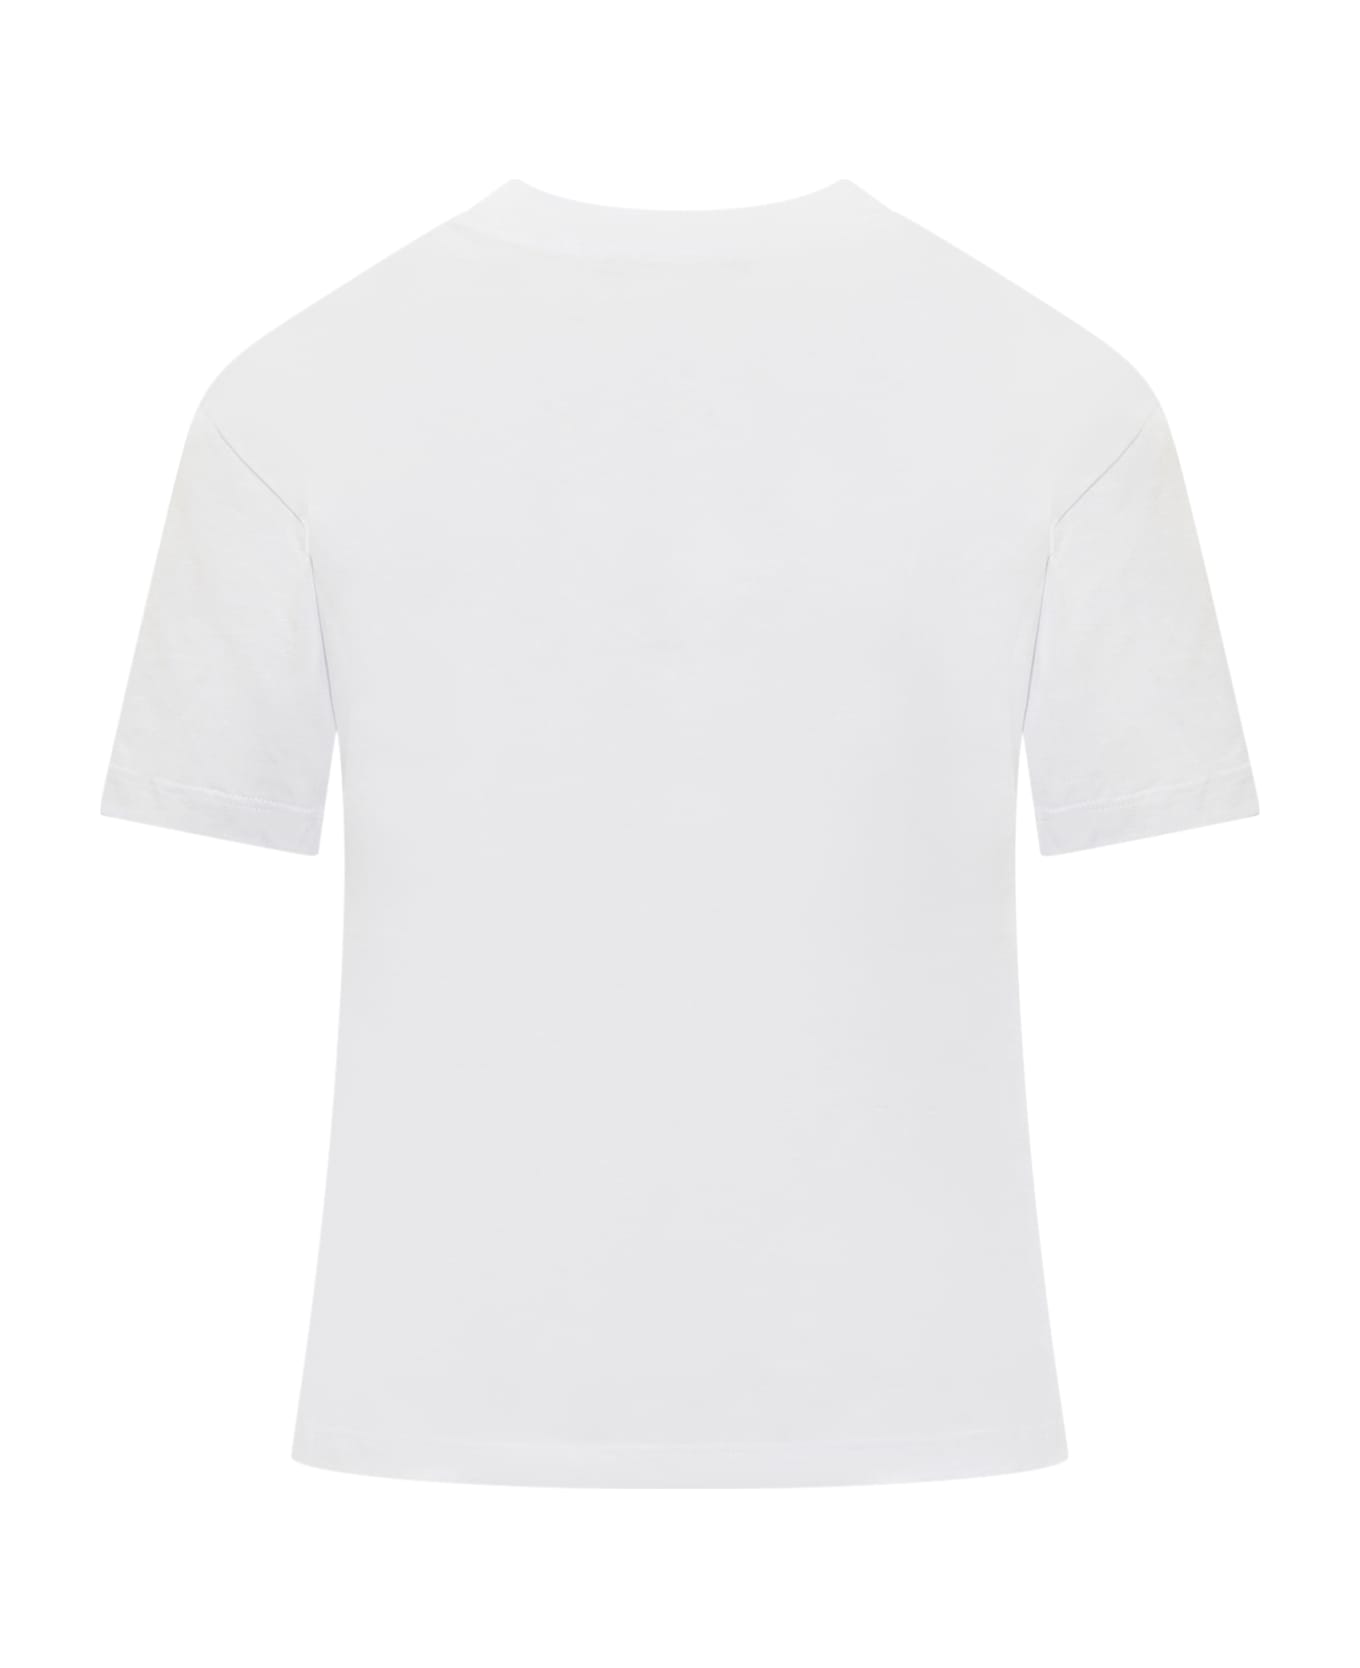 MSGM Massimo Giorgetti T-shirt - OPTICAL WHITE Tシャツ